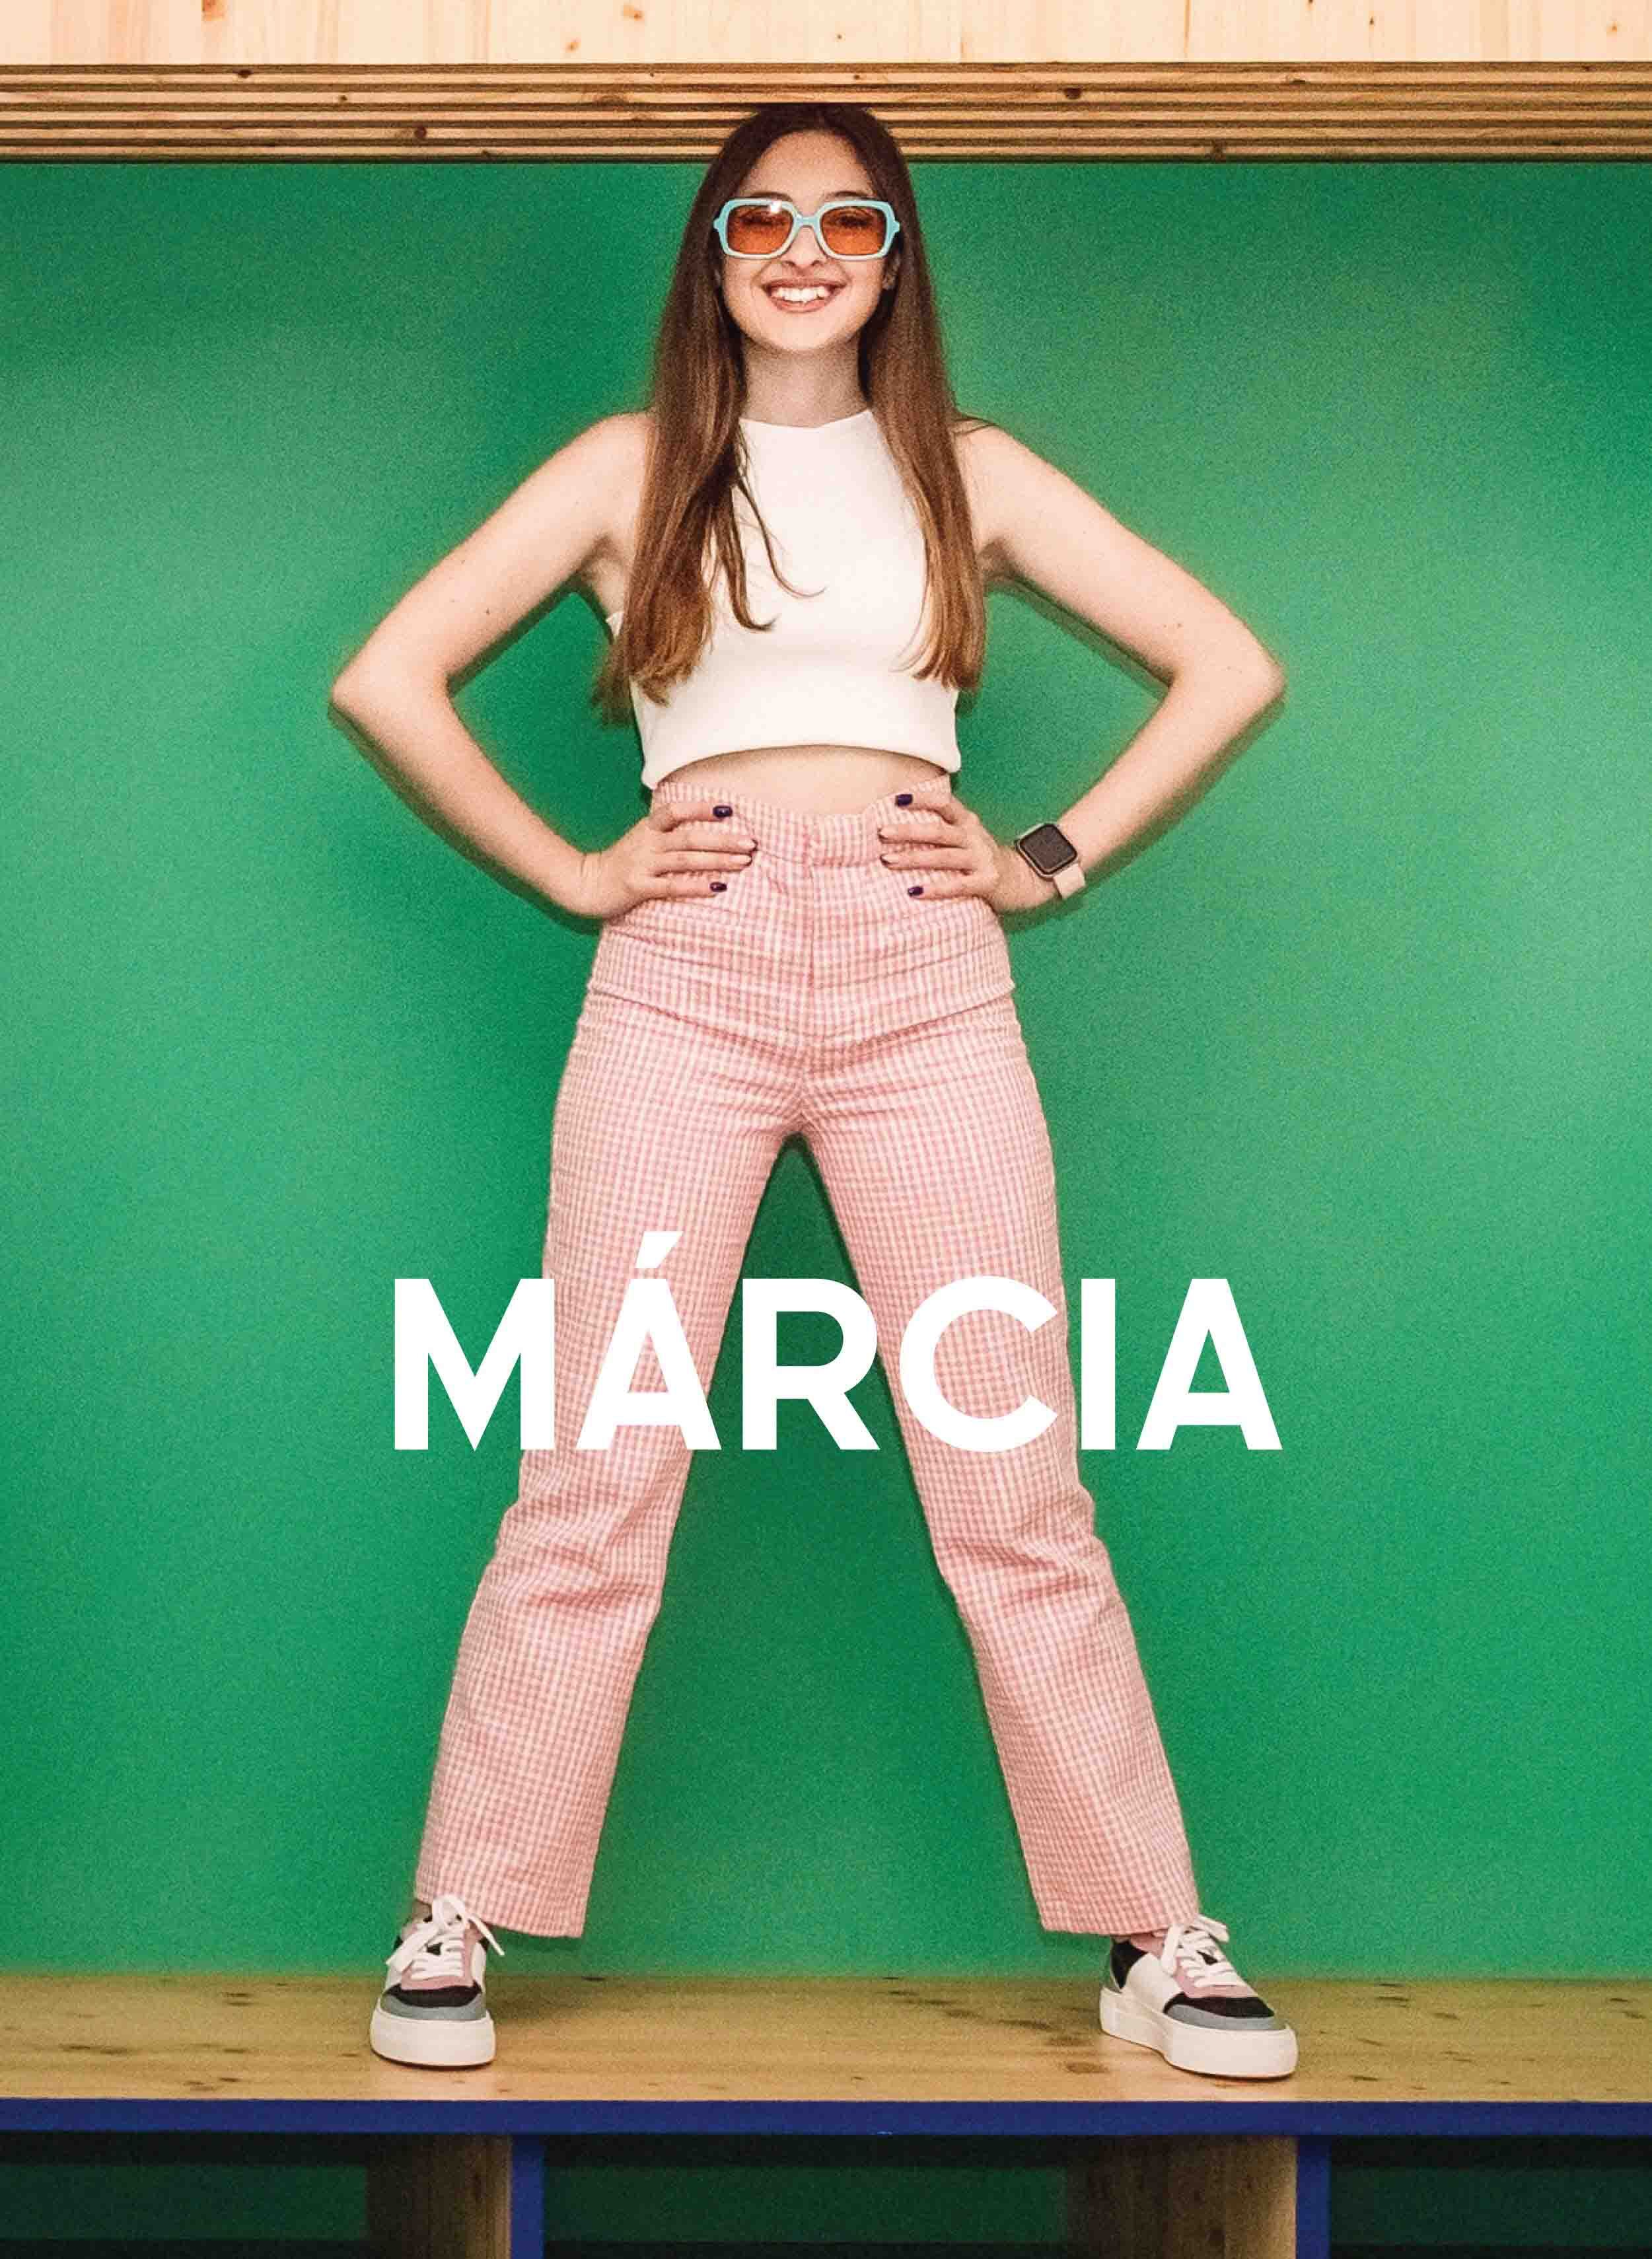 Márcia in einem weißen Oberteil und einer rotkarierten Hose, lächelnd mit der Hand auf der Taille, Diverge sneakers, Förderung sozialer Auswirkungen und maßgefertigter Schuhe im Rahmen des IMAGINE-Projekts.